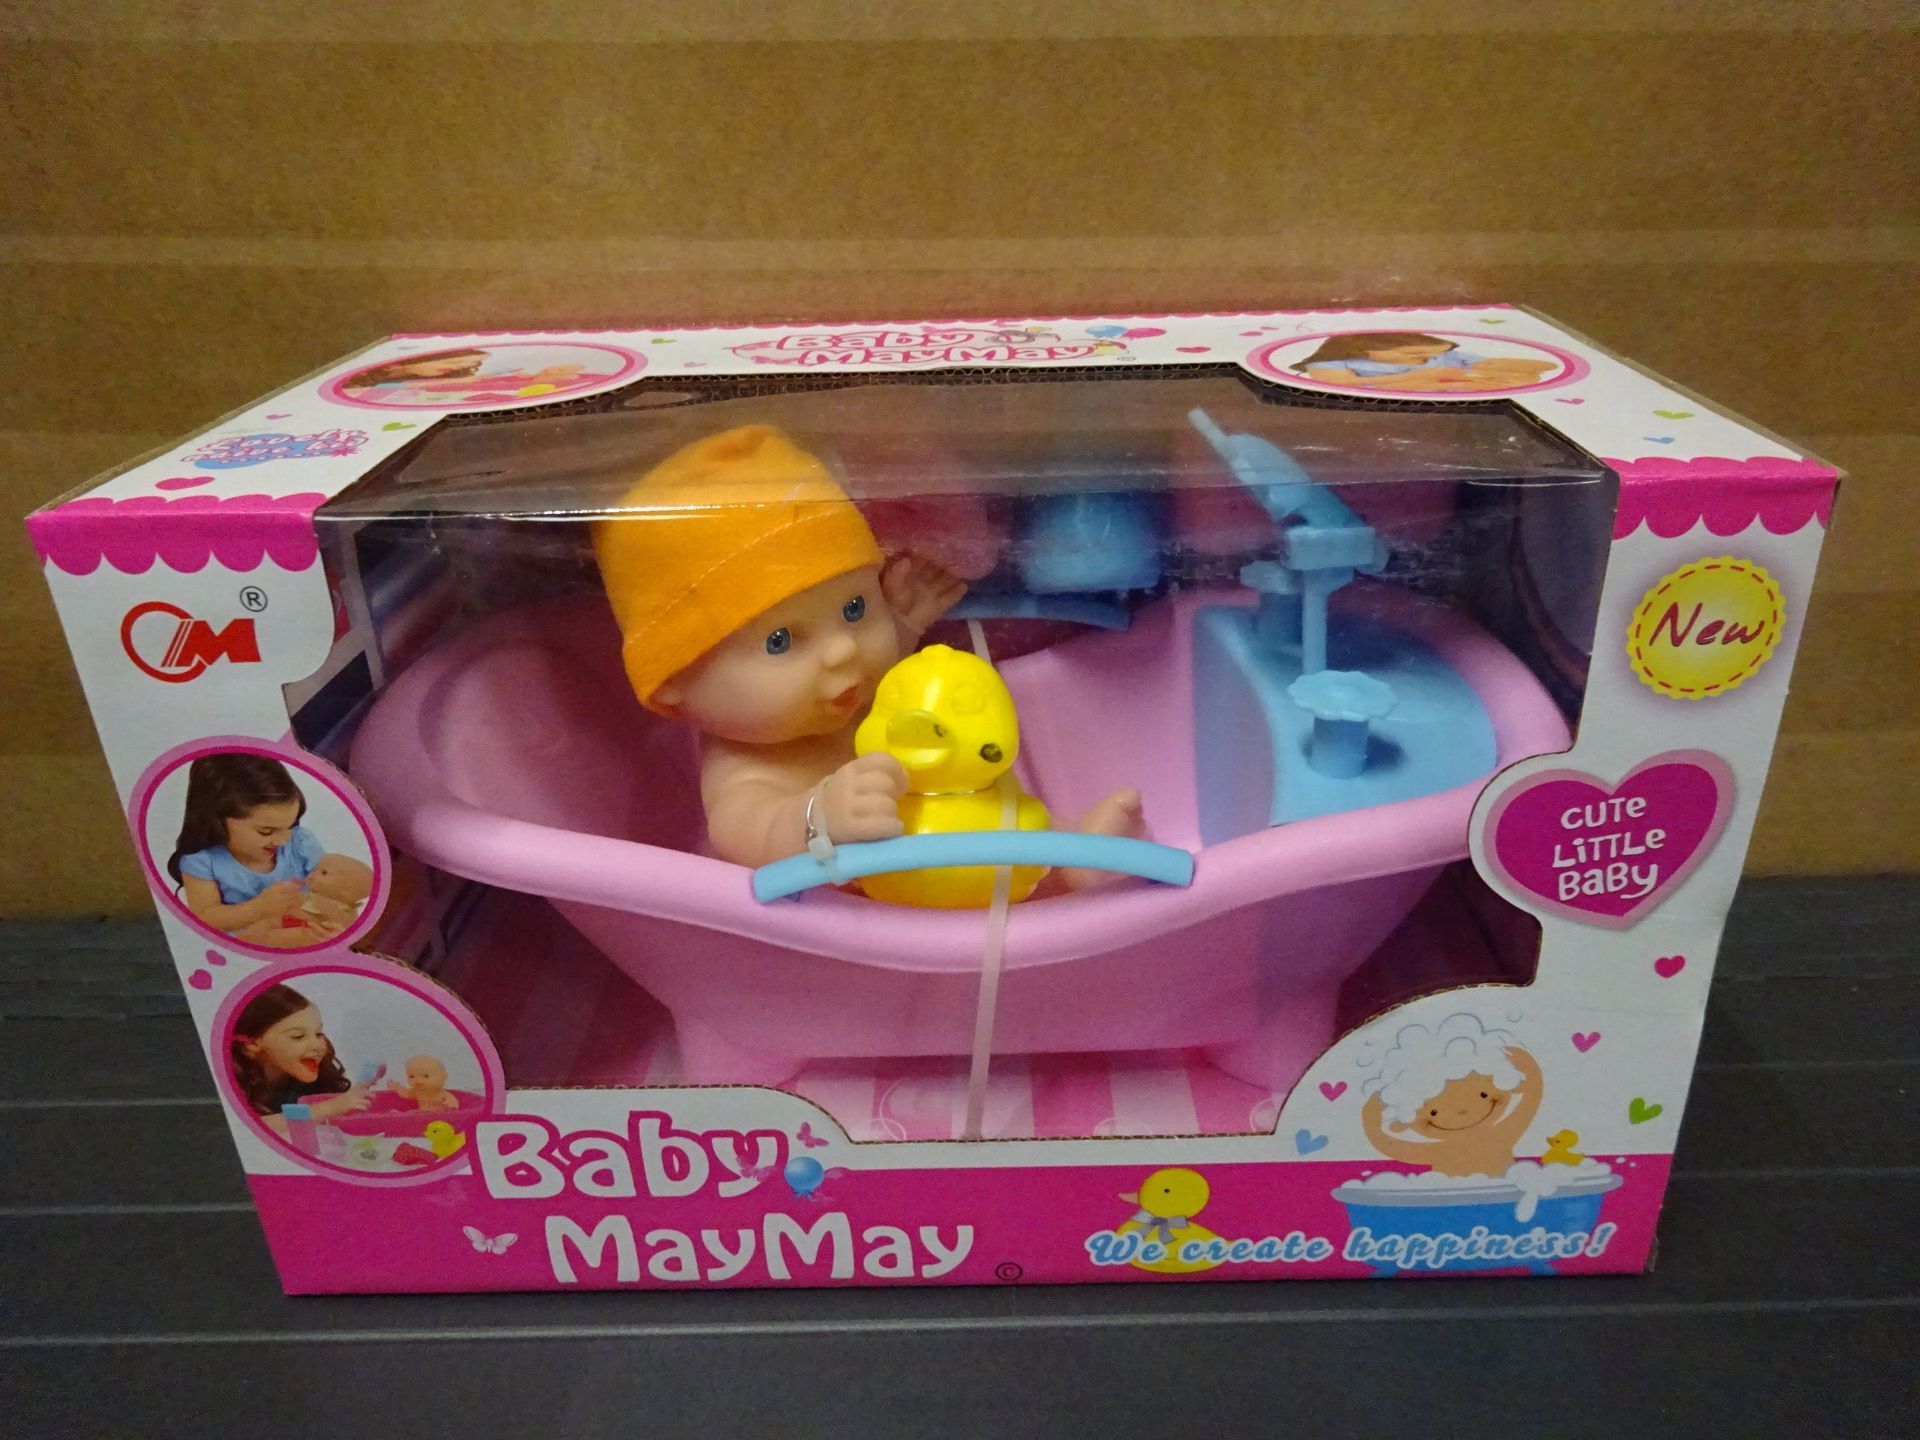 Baby MayMay Bath Set